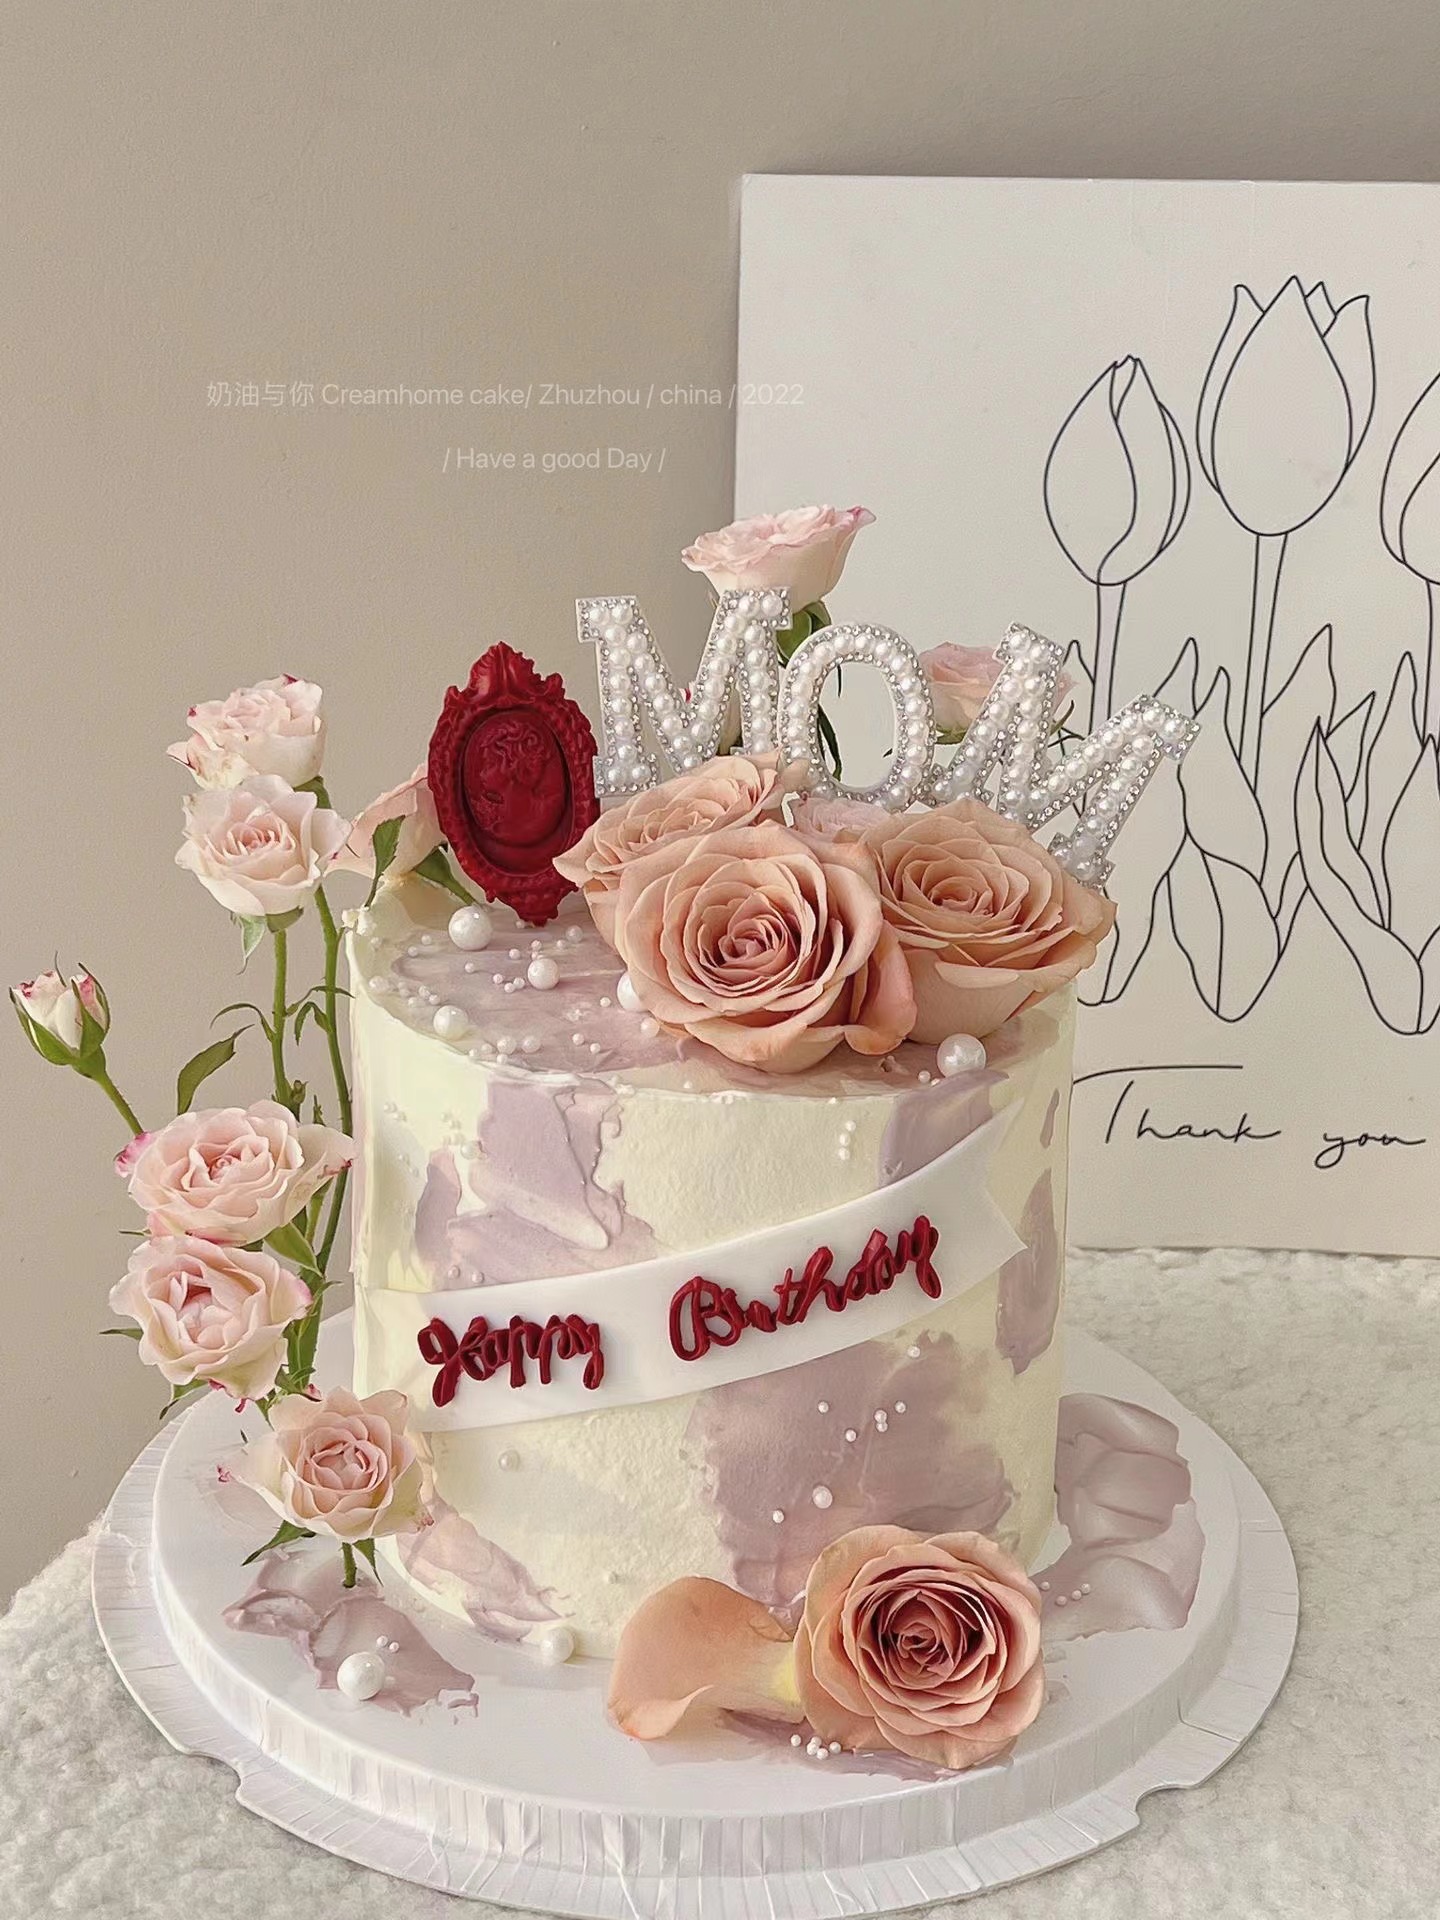 妈妈生日蛋糕装饰简约白色珍珠mom玫瑰花母亲节女神蛋糕摆件插件-图1